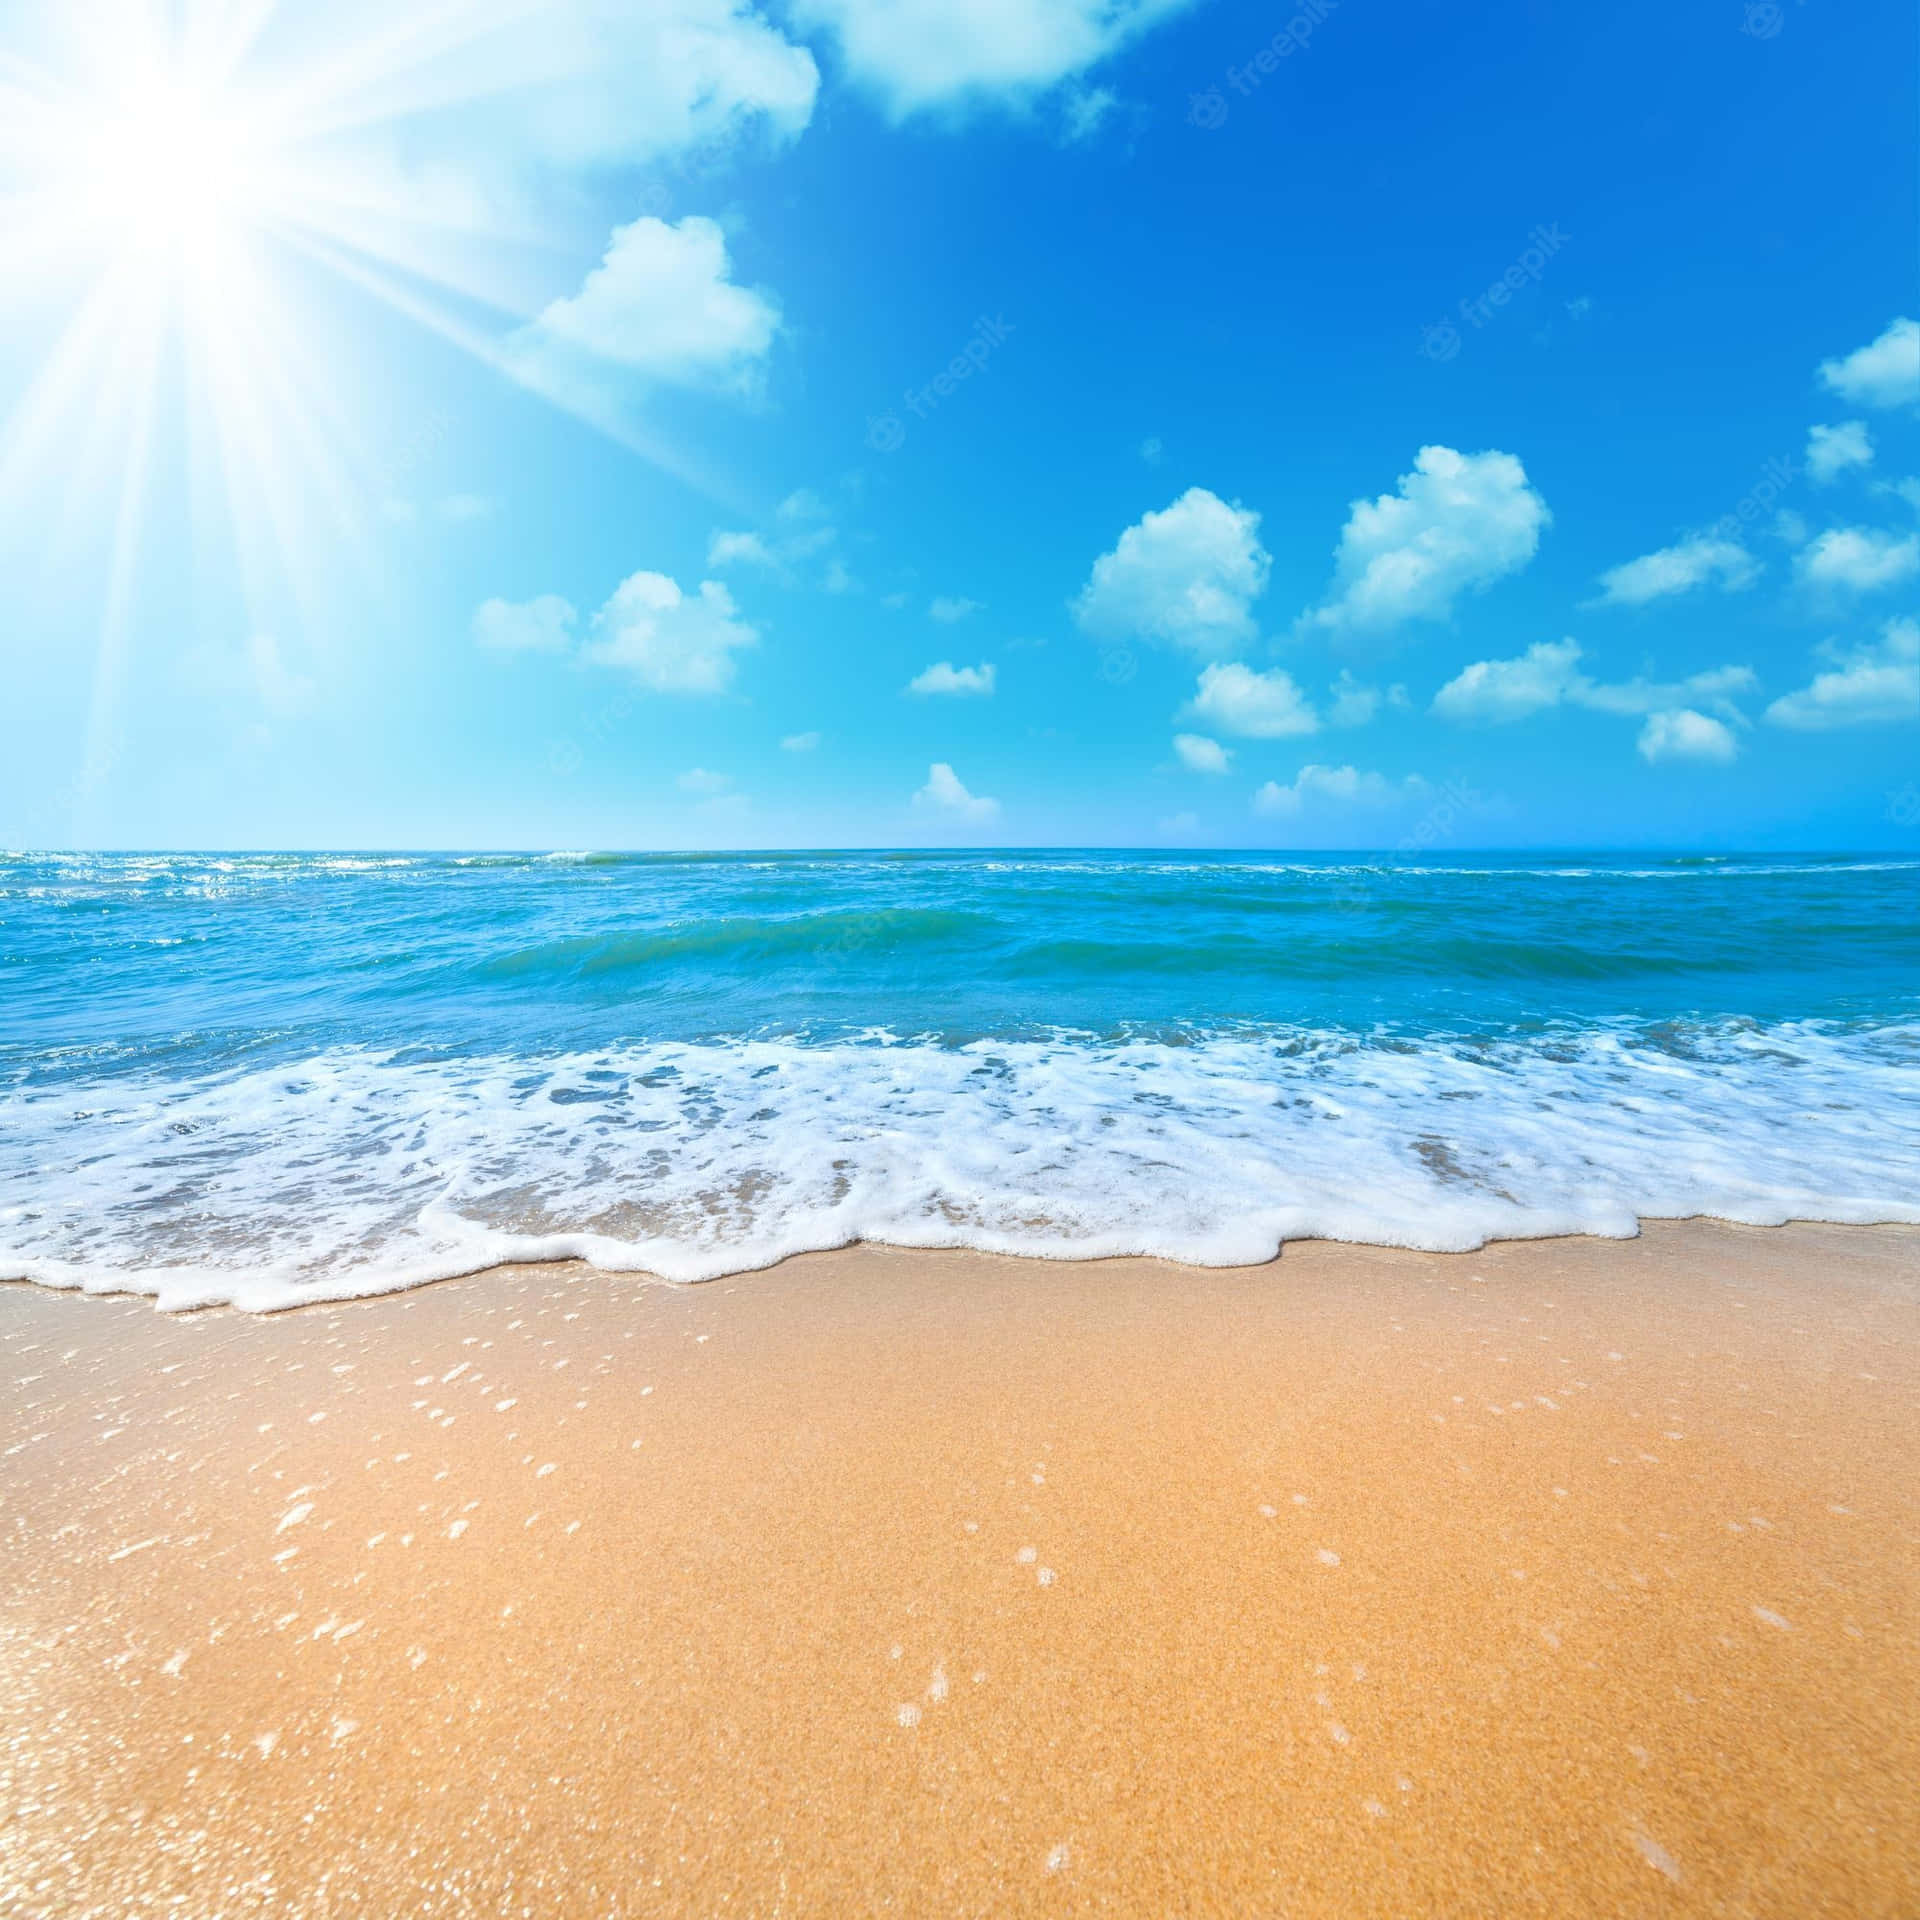 Enjoy a Blissful Summer Beach Day